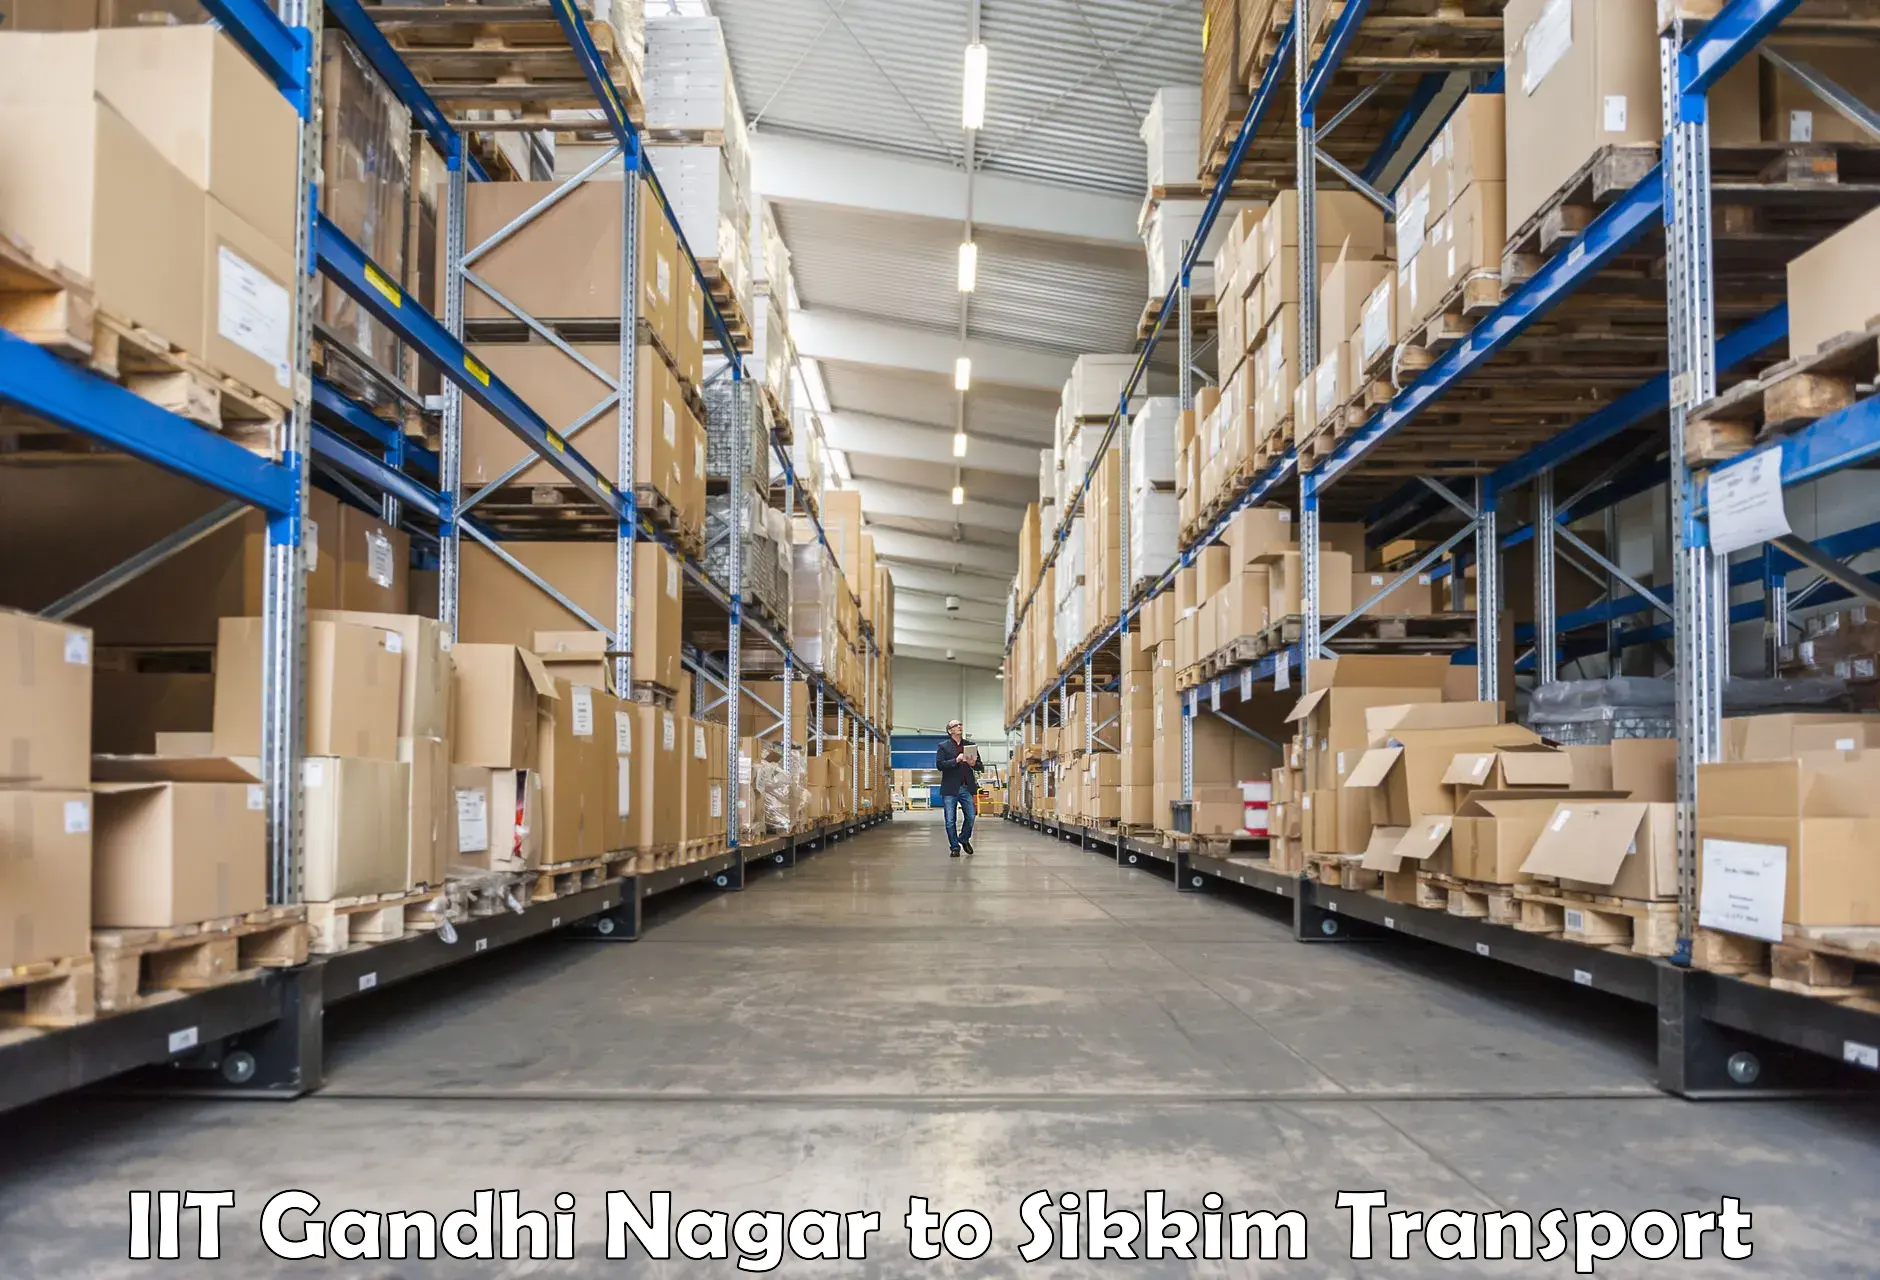 Cargo transport services IIT Gandhi Nagar to Sikkim